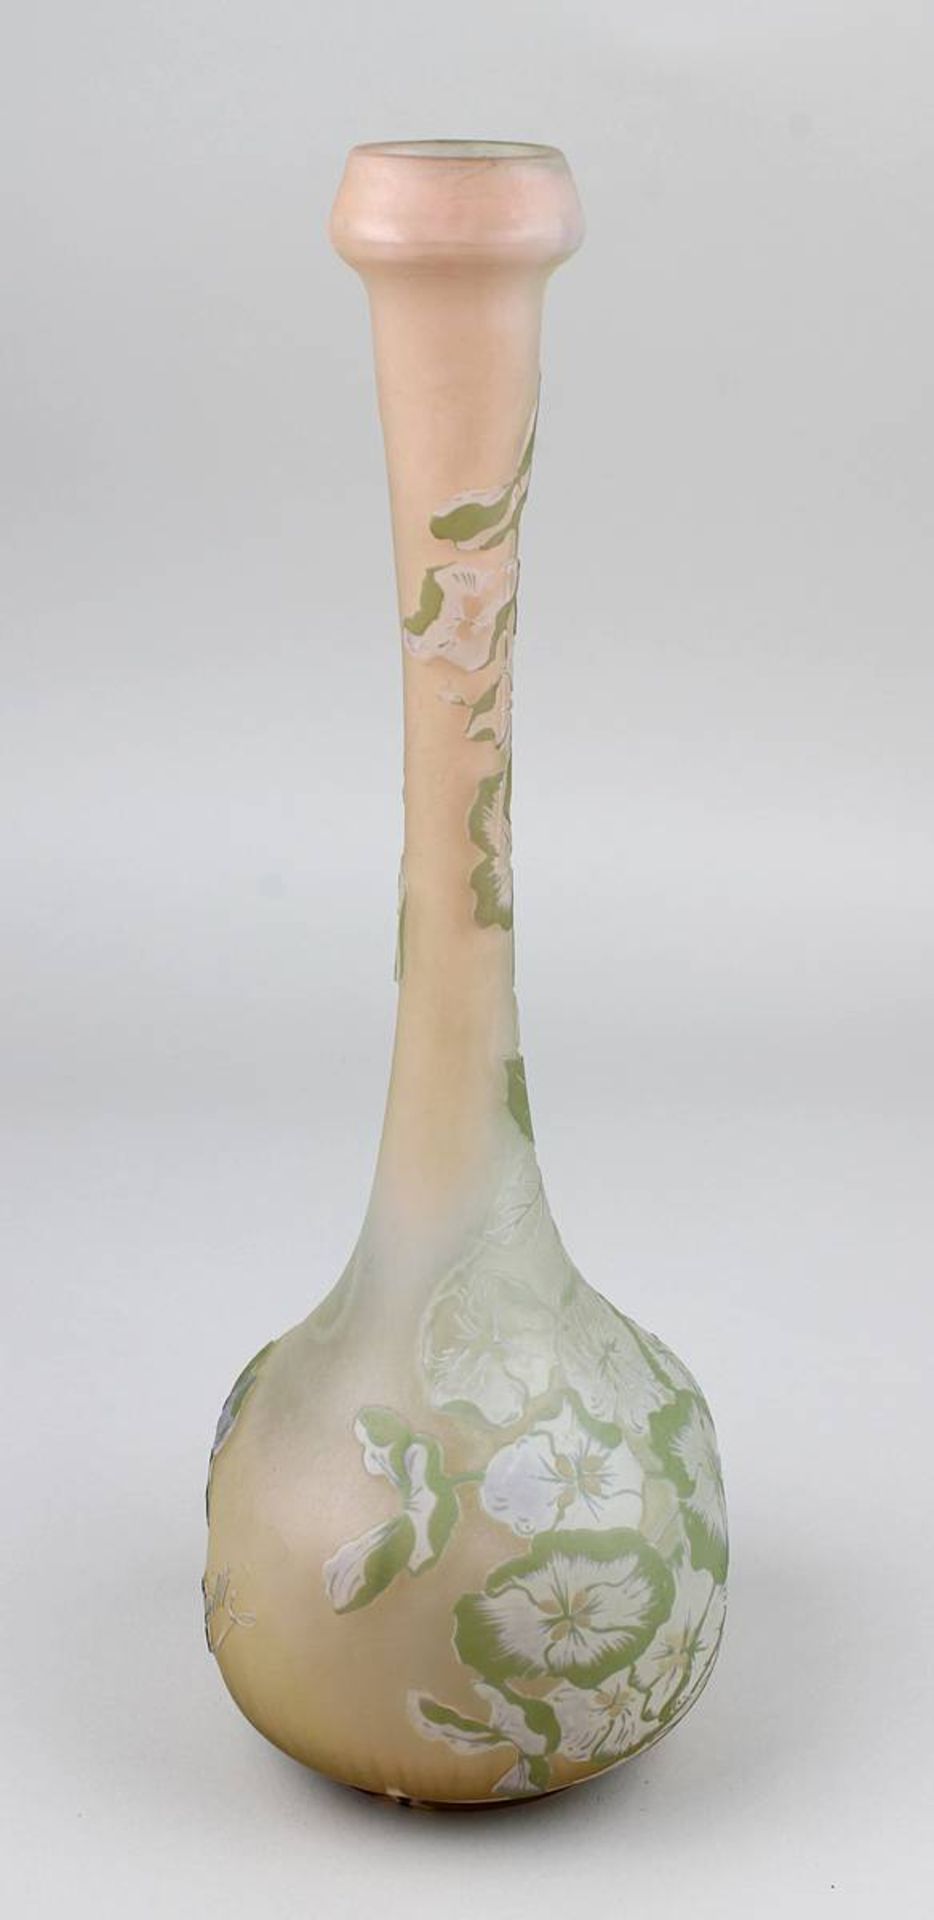 Gallé Jugendstil-Vase mit Hortensiendekor, Nancy 1904-06, vierpassiger Vasenbau mit langgezogenem - Image 5 of 5